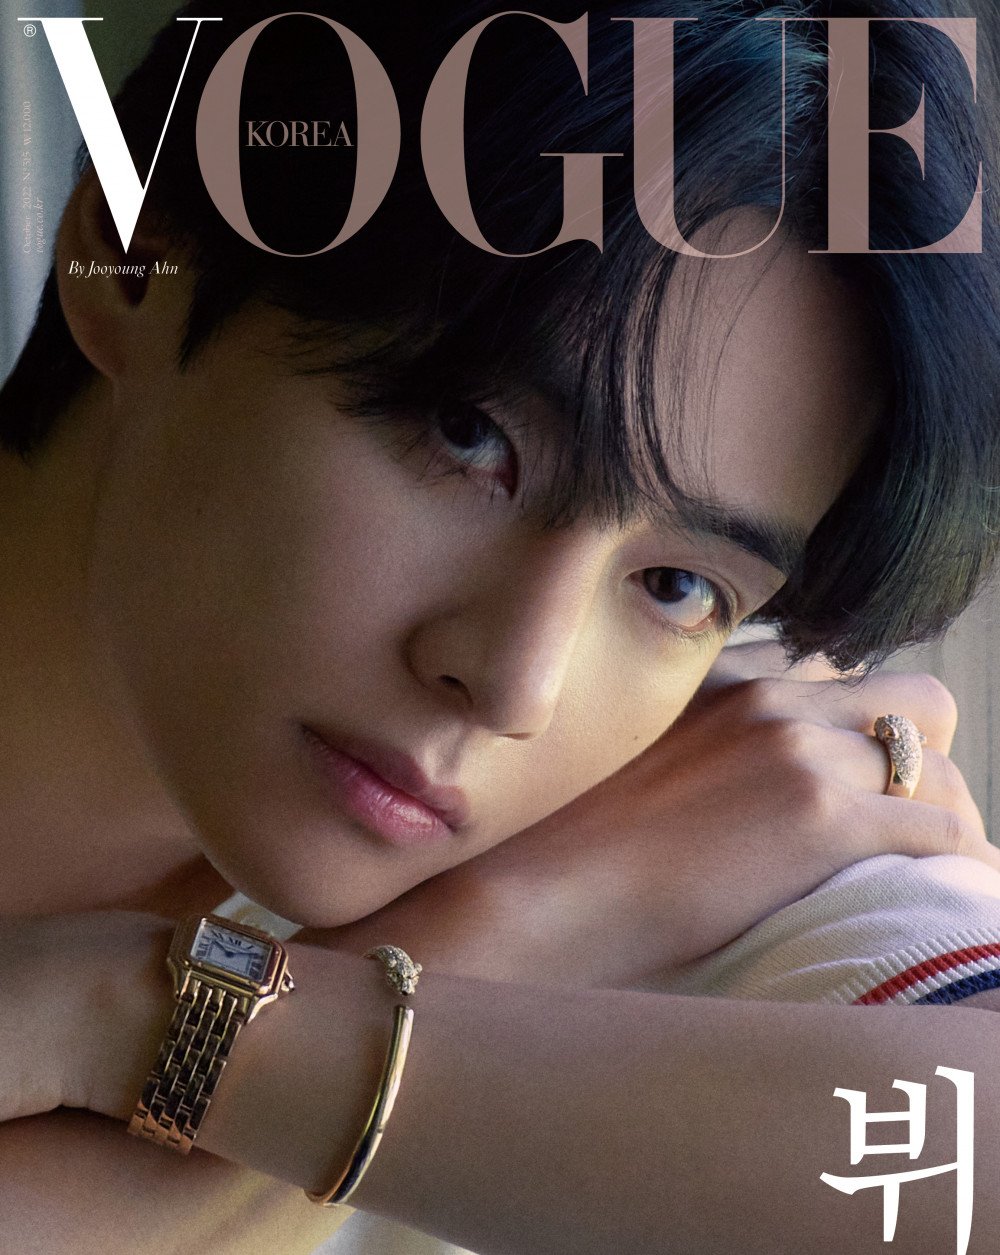 V BTS đeo trang sức, đồng hồ Cartier lên trang bìa tạp chí Vogue Hàn Quốc. Ảnh: Vogue